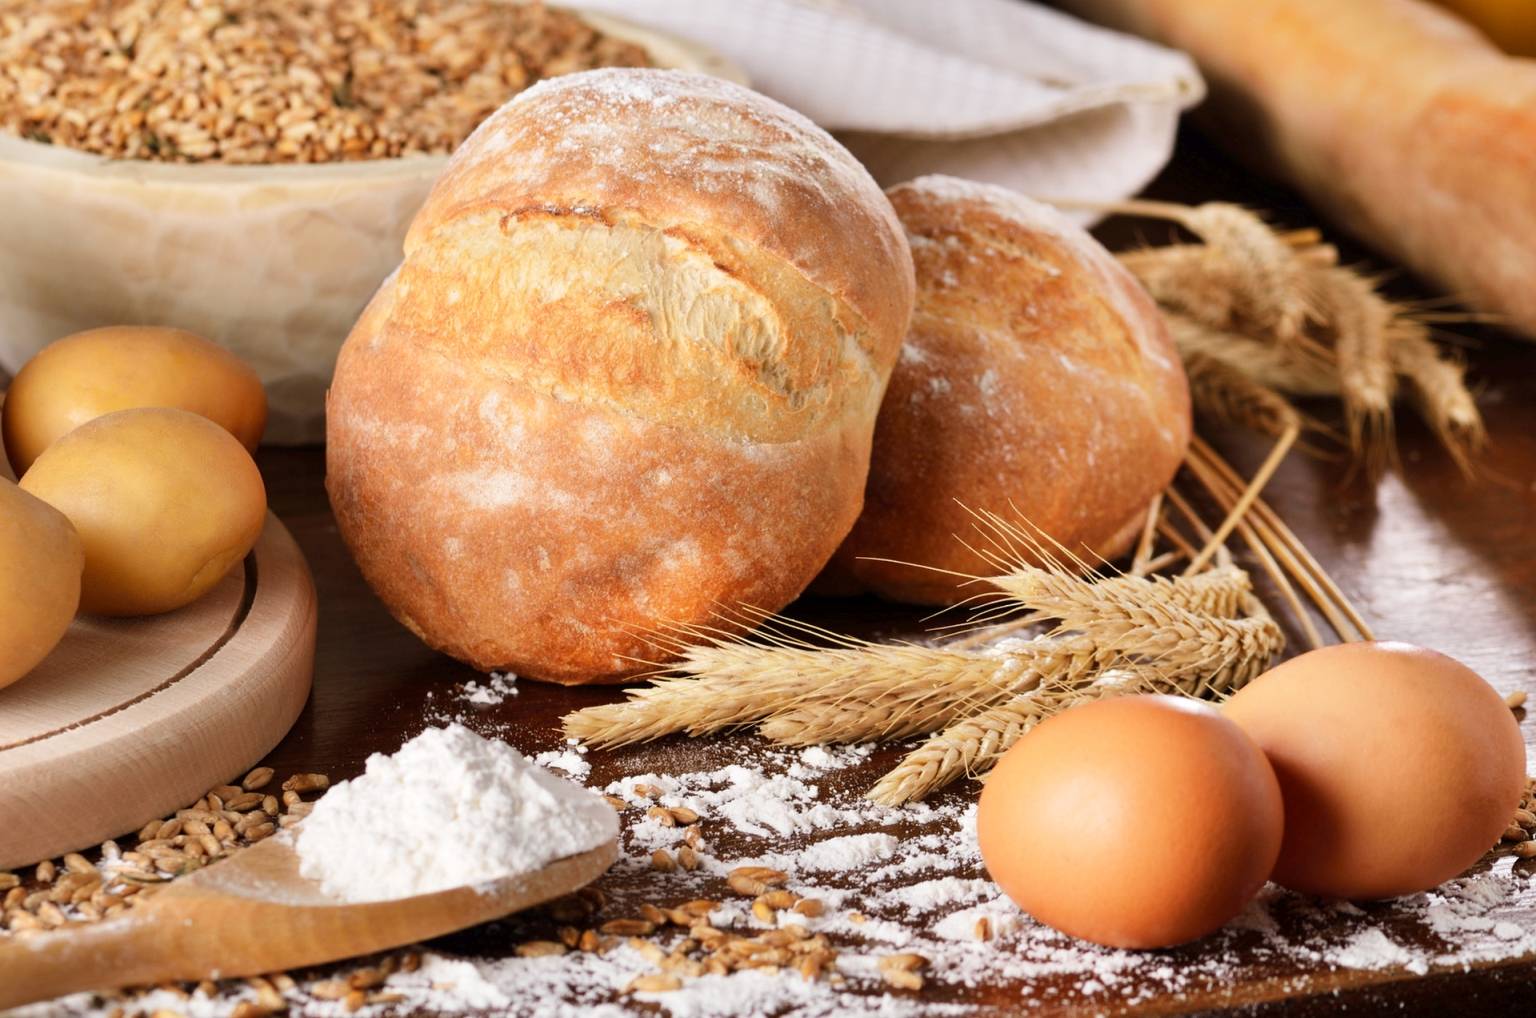 Celiakia - co to za choroba, jak się objawia i co ma wspólnego z dietą bezglutenową? Bułki pszenne, mąka pszenna i jajka na drewnianym stole.